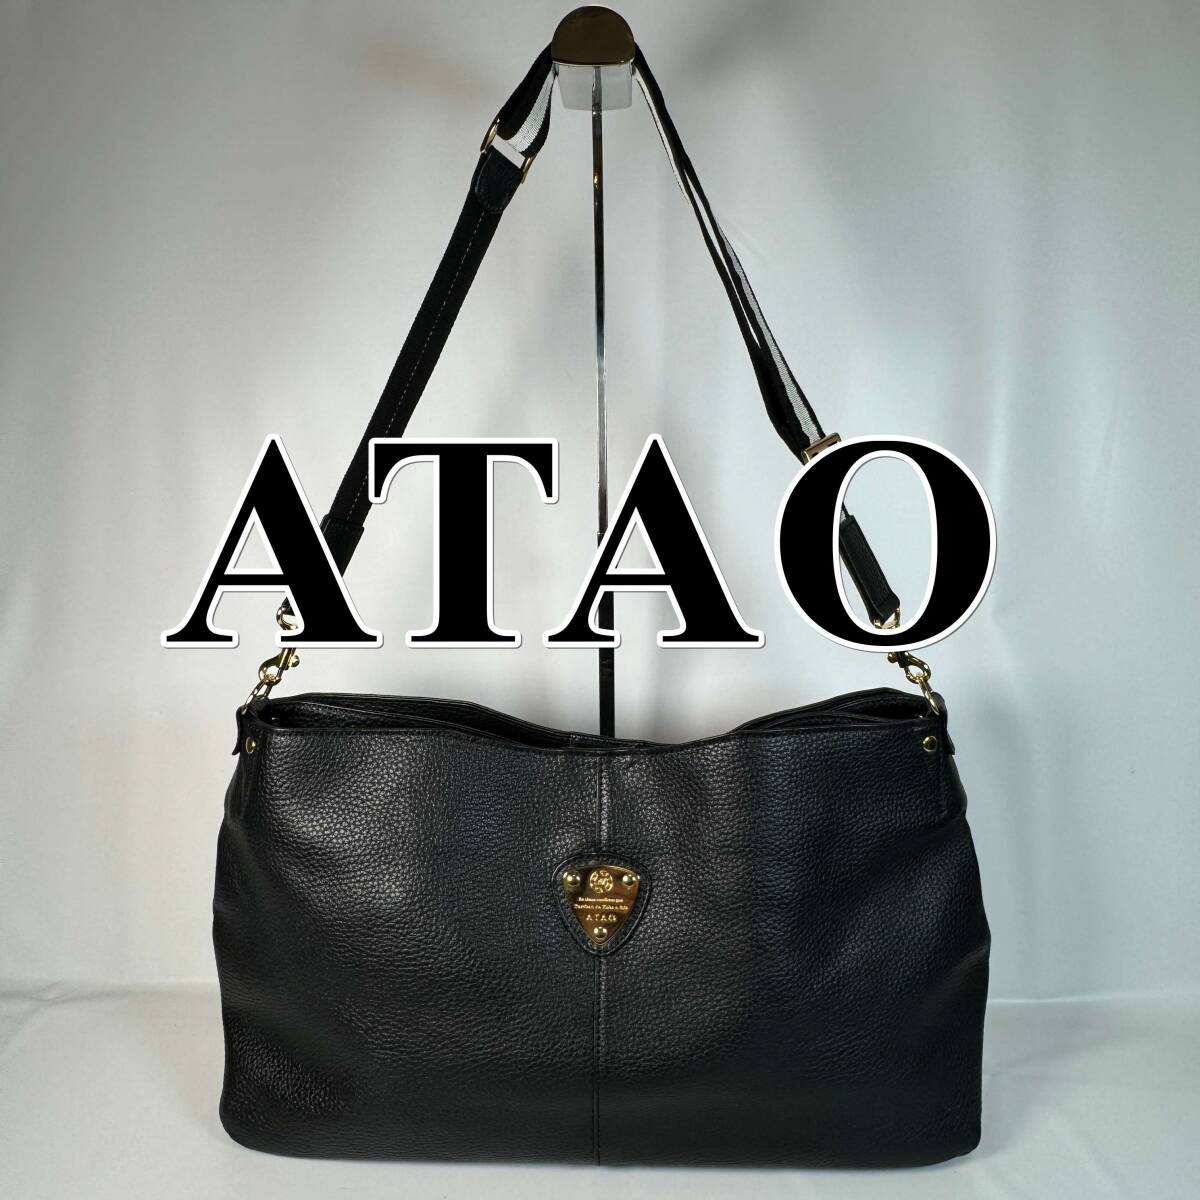 ATAO アタオ レザーバッグ ワンショルダー グリーン a0173-